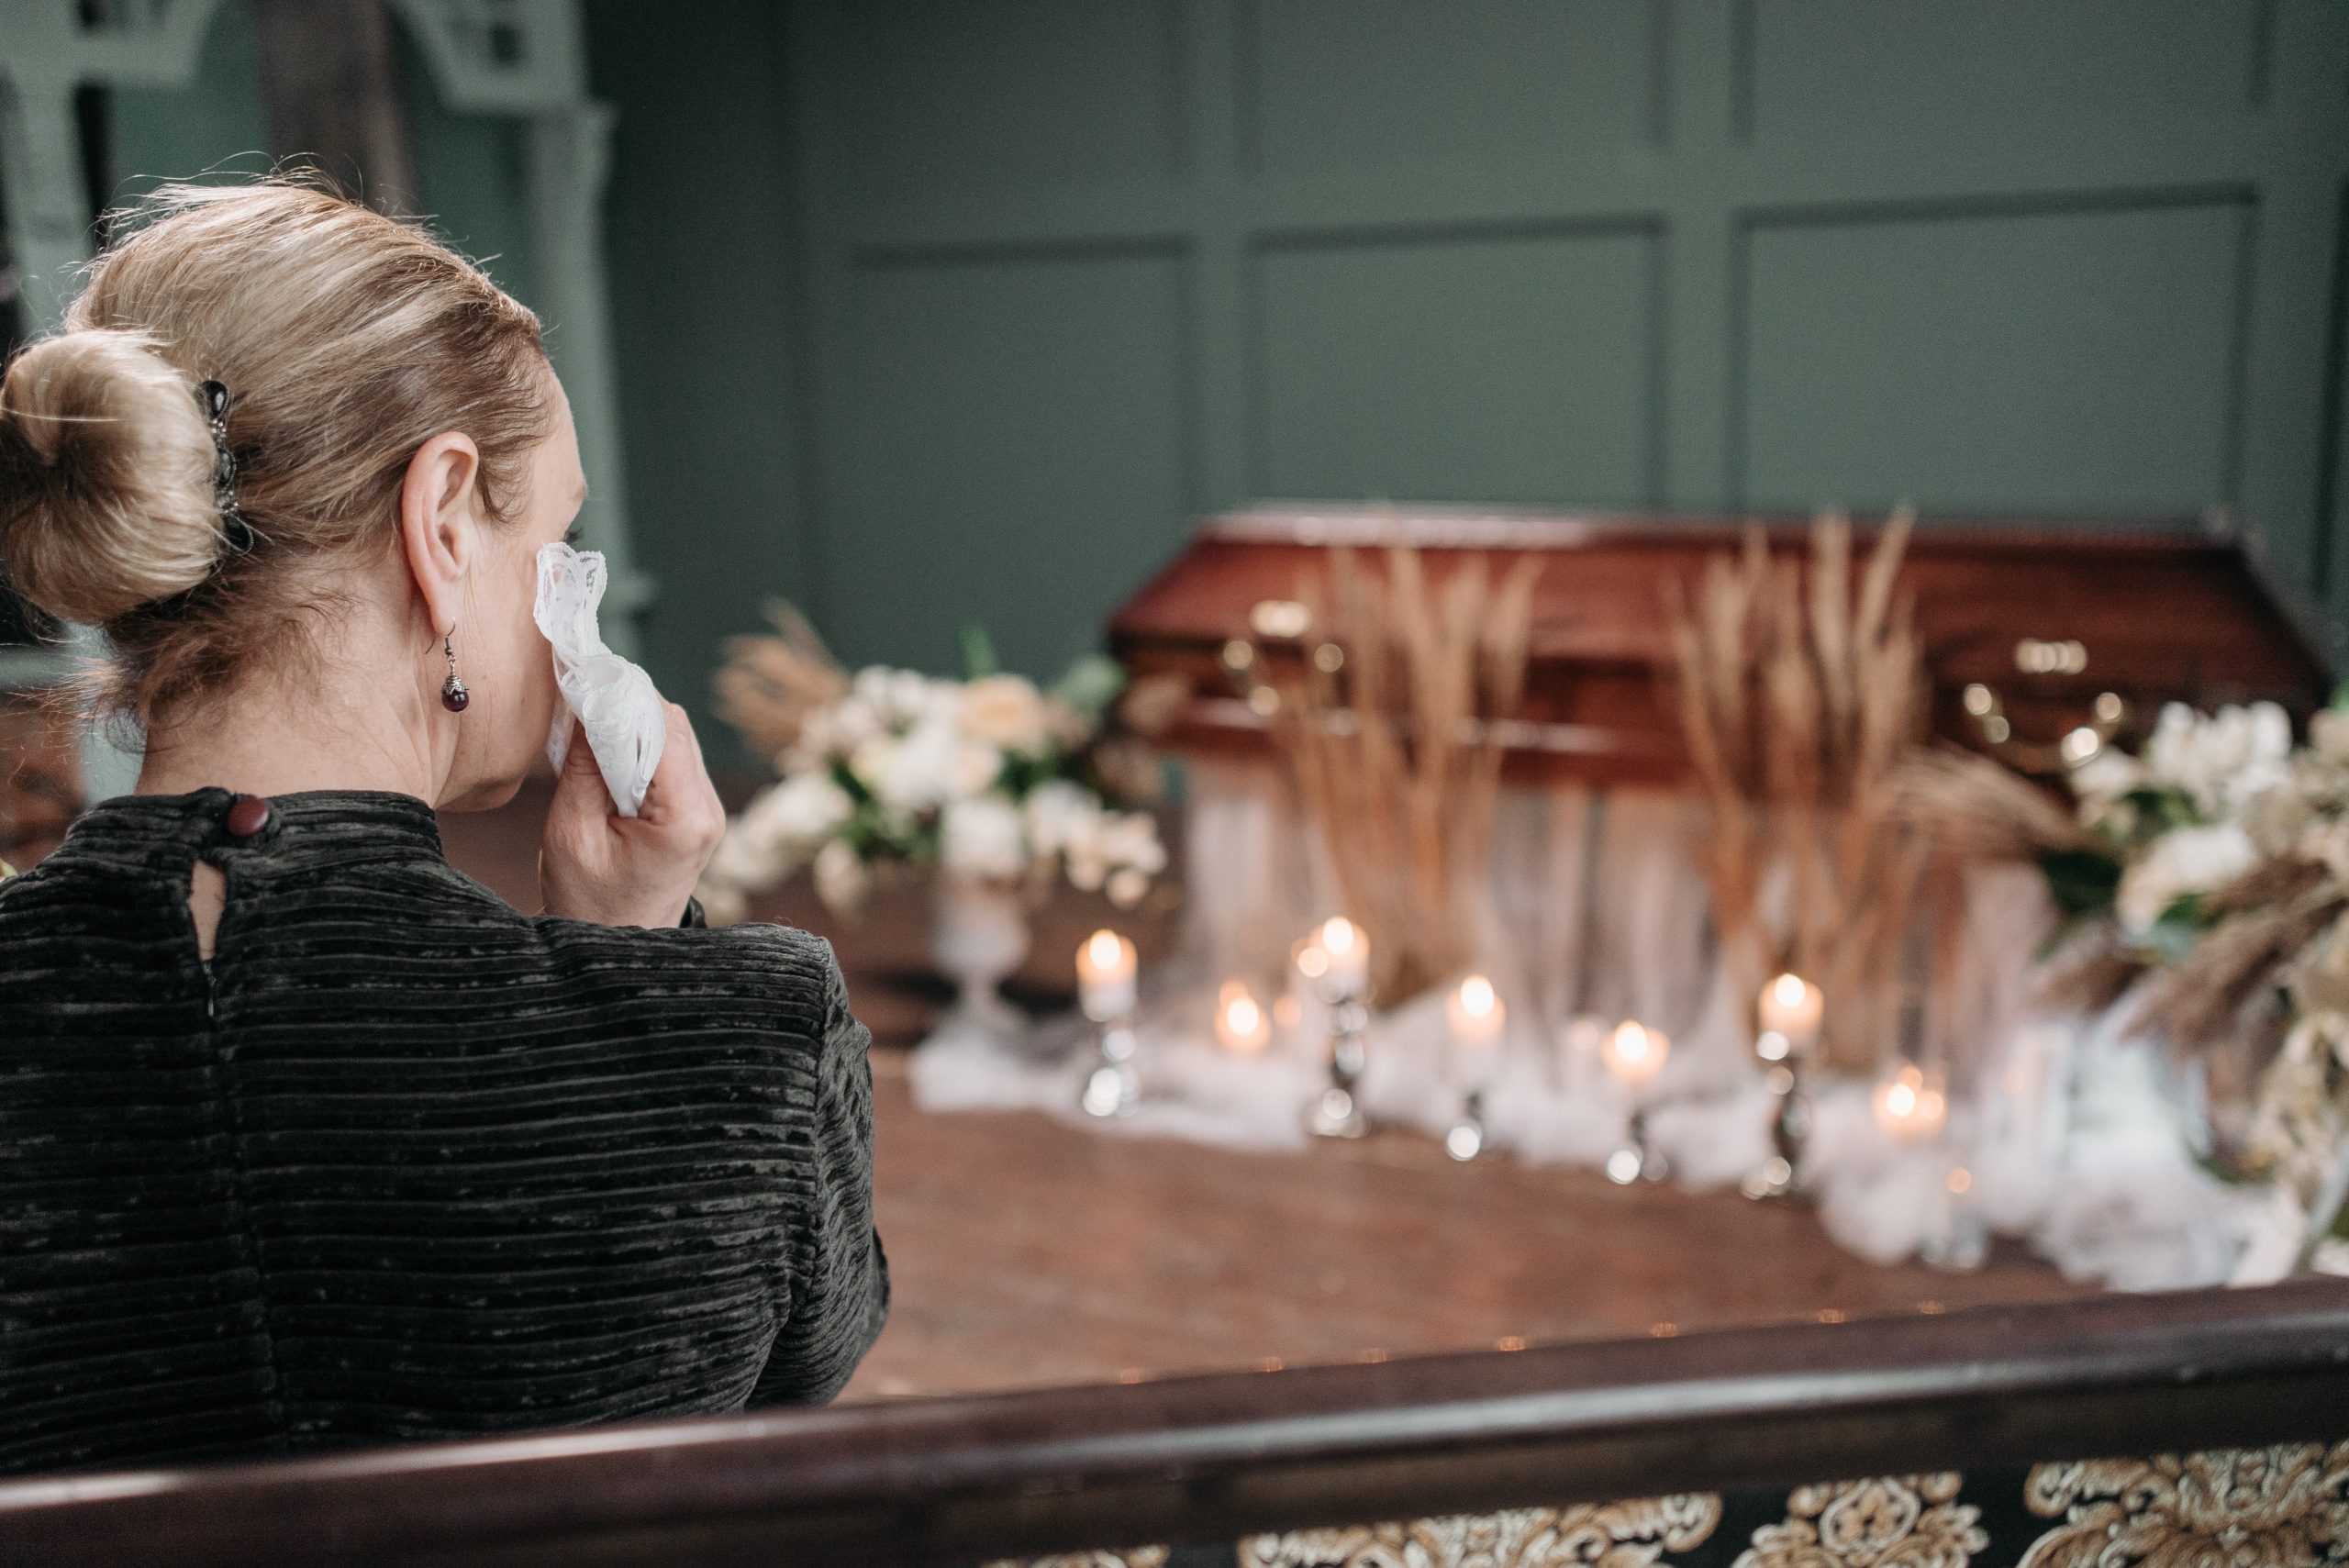 Att beklaga sorgen – så visar du deltagande i någons sorg